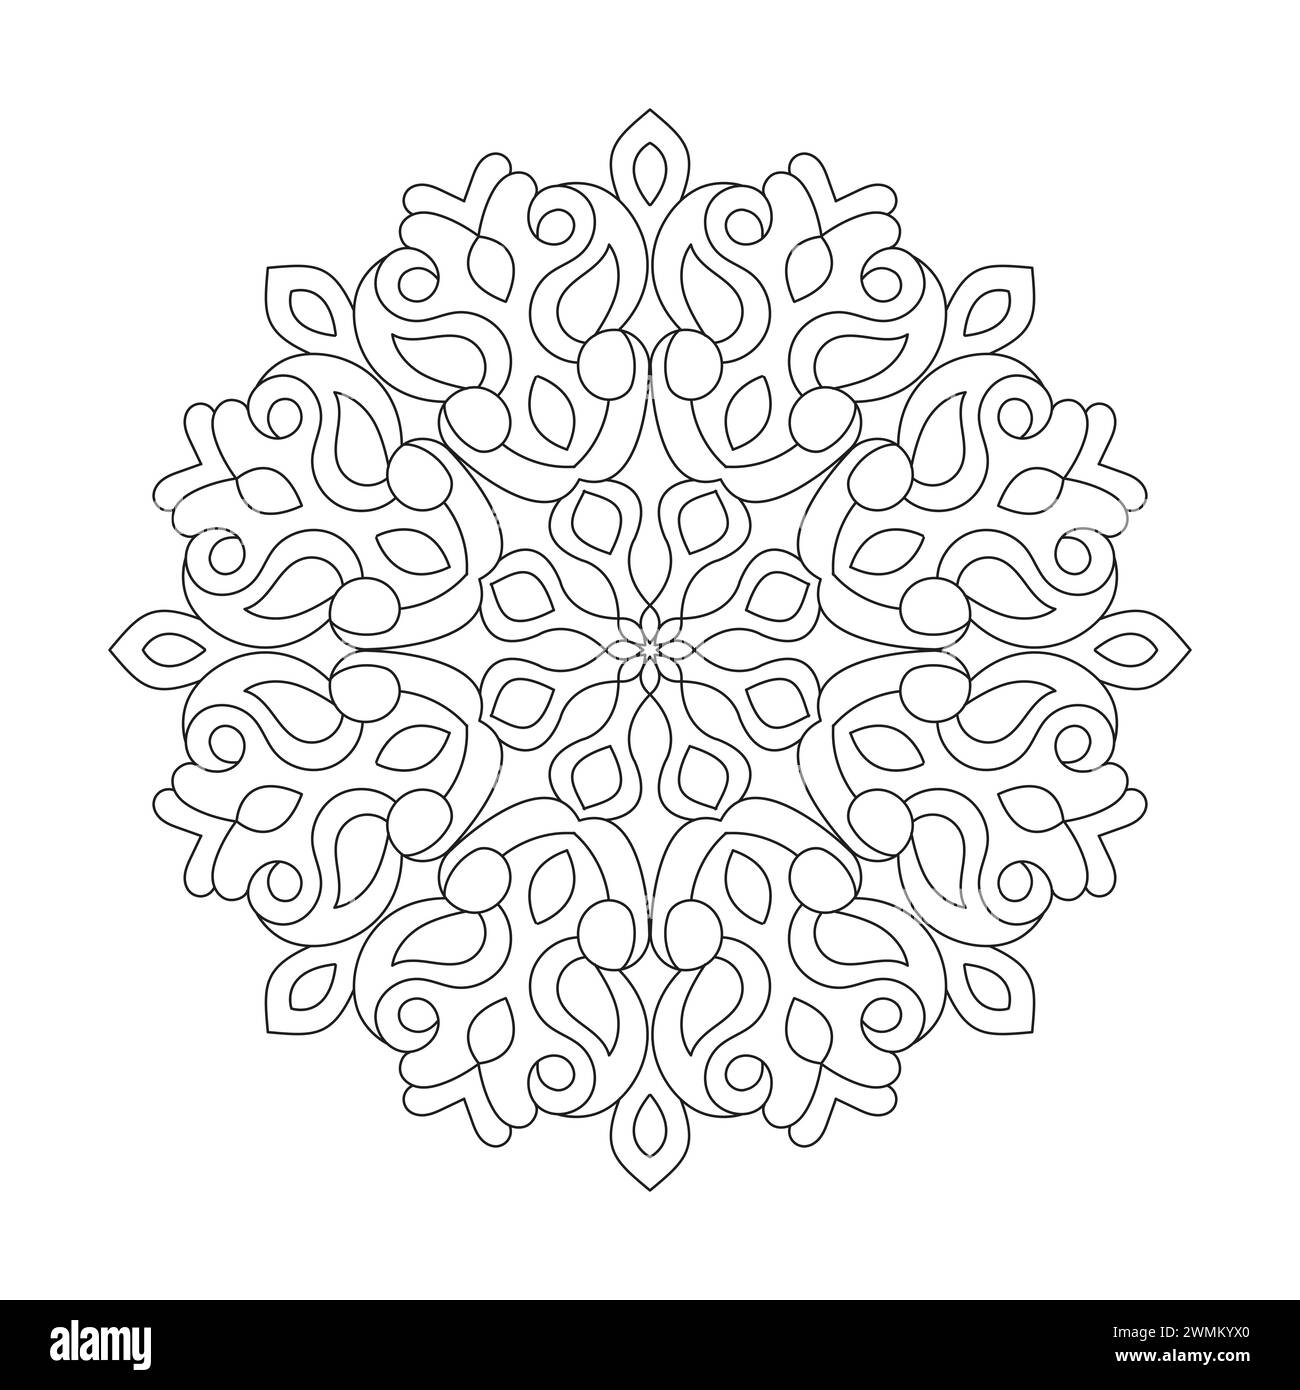 Simplicity Medietation Mandala Malbuch Seite für kdp Book Interior. Friedliche Blütenblätter, Fähigkeit zum Entspannen, Gehirnerlebnisse, harmonischer Hafen, Frieden Stock Vektor